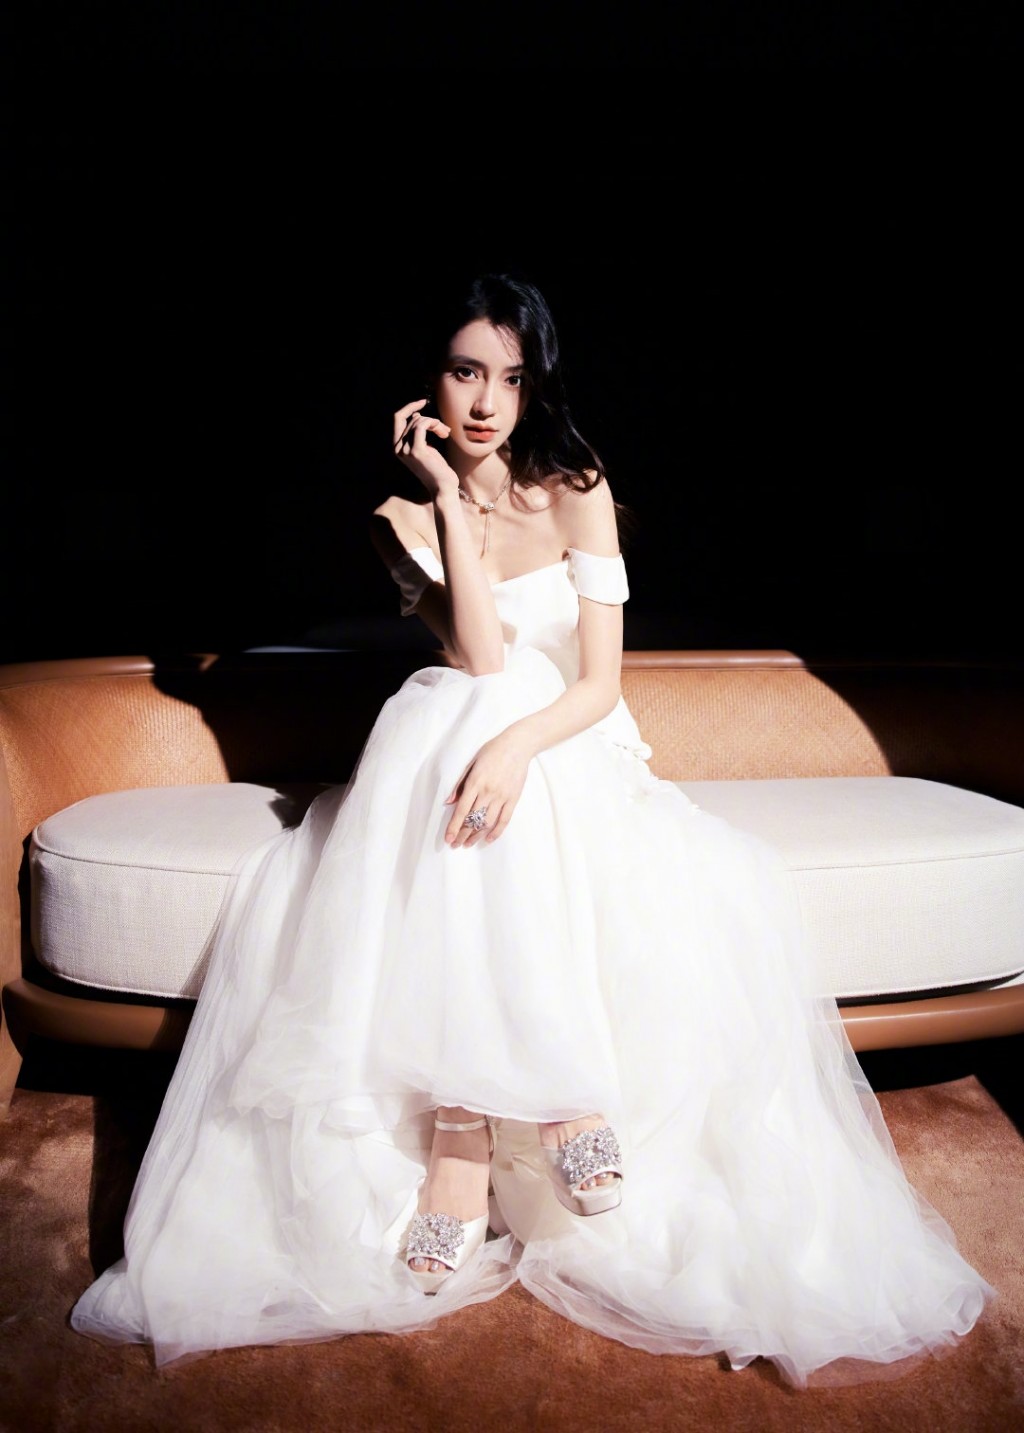 Angelababy花织柔纱白裙造型纯美气质写真图片